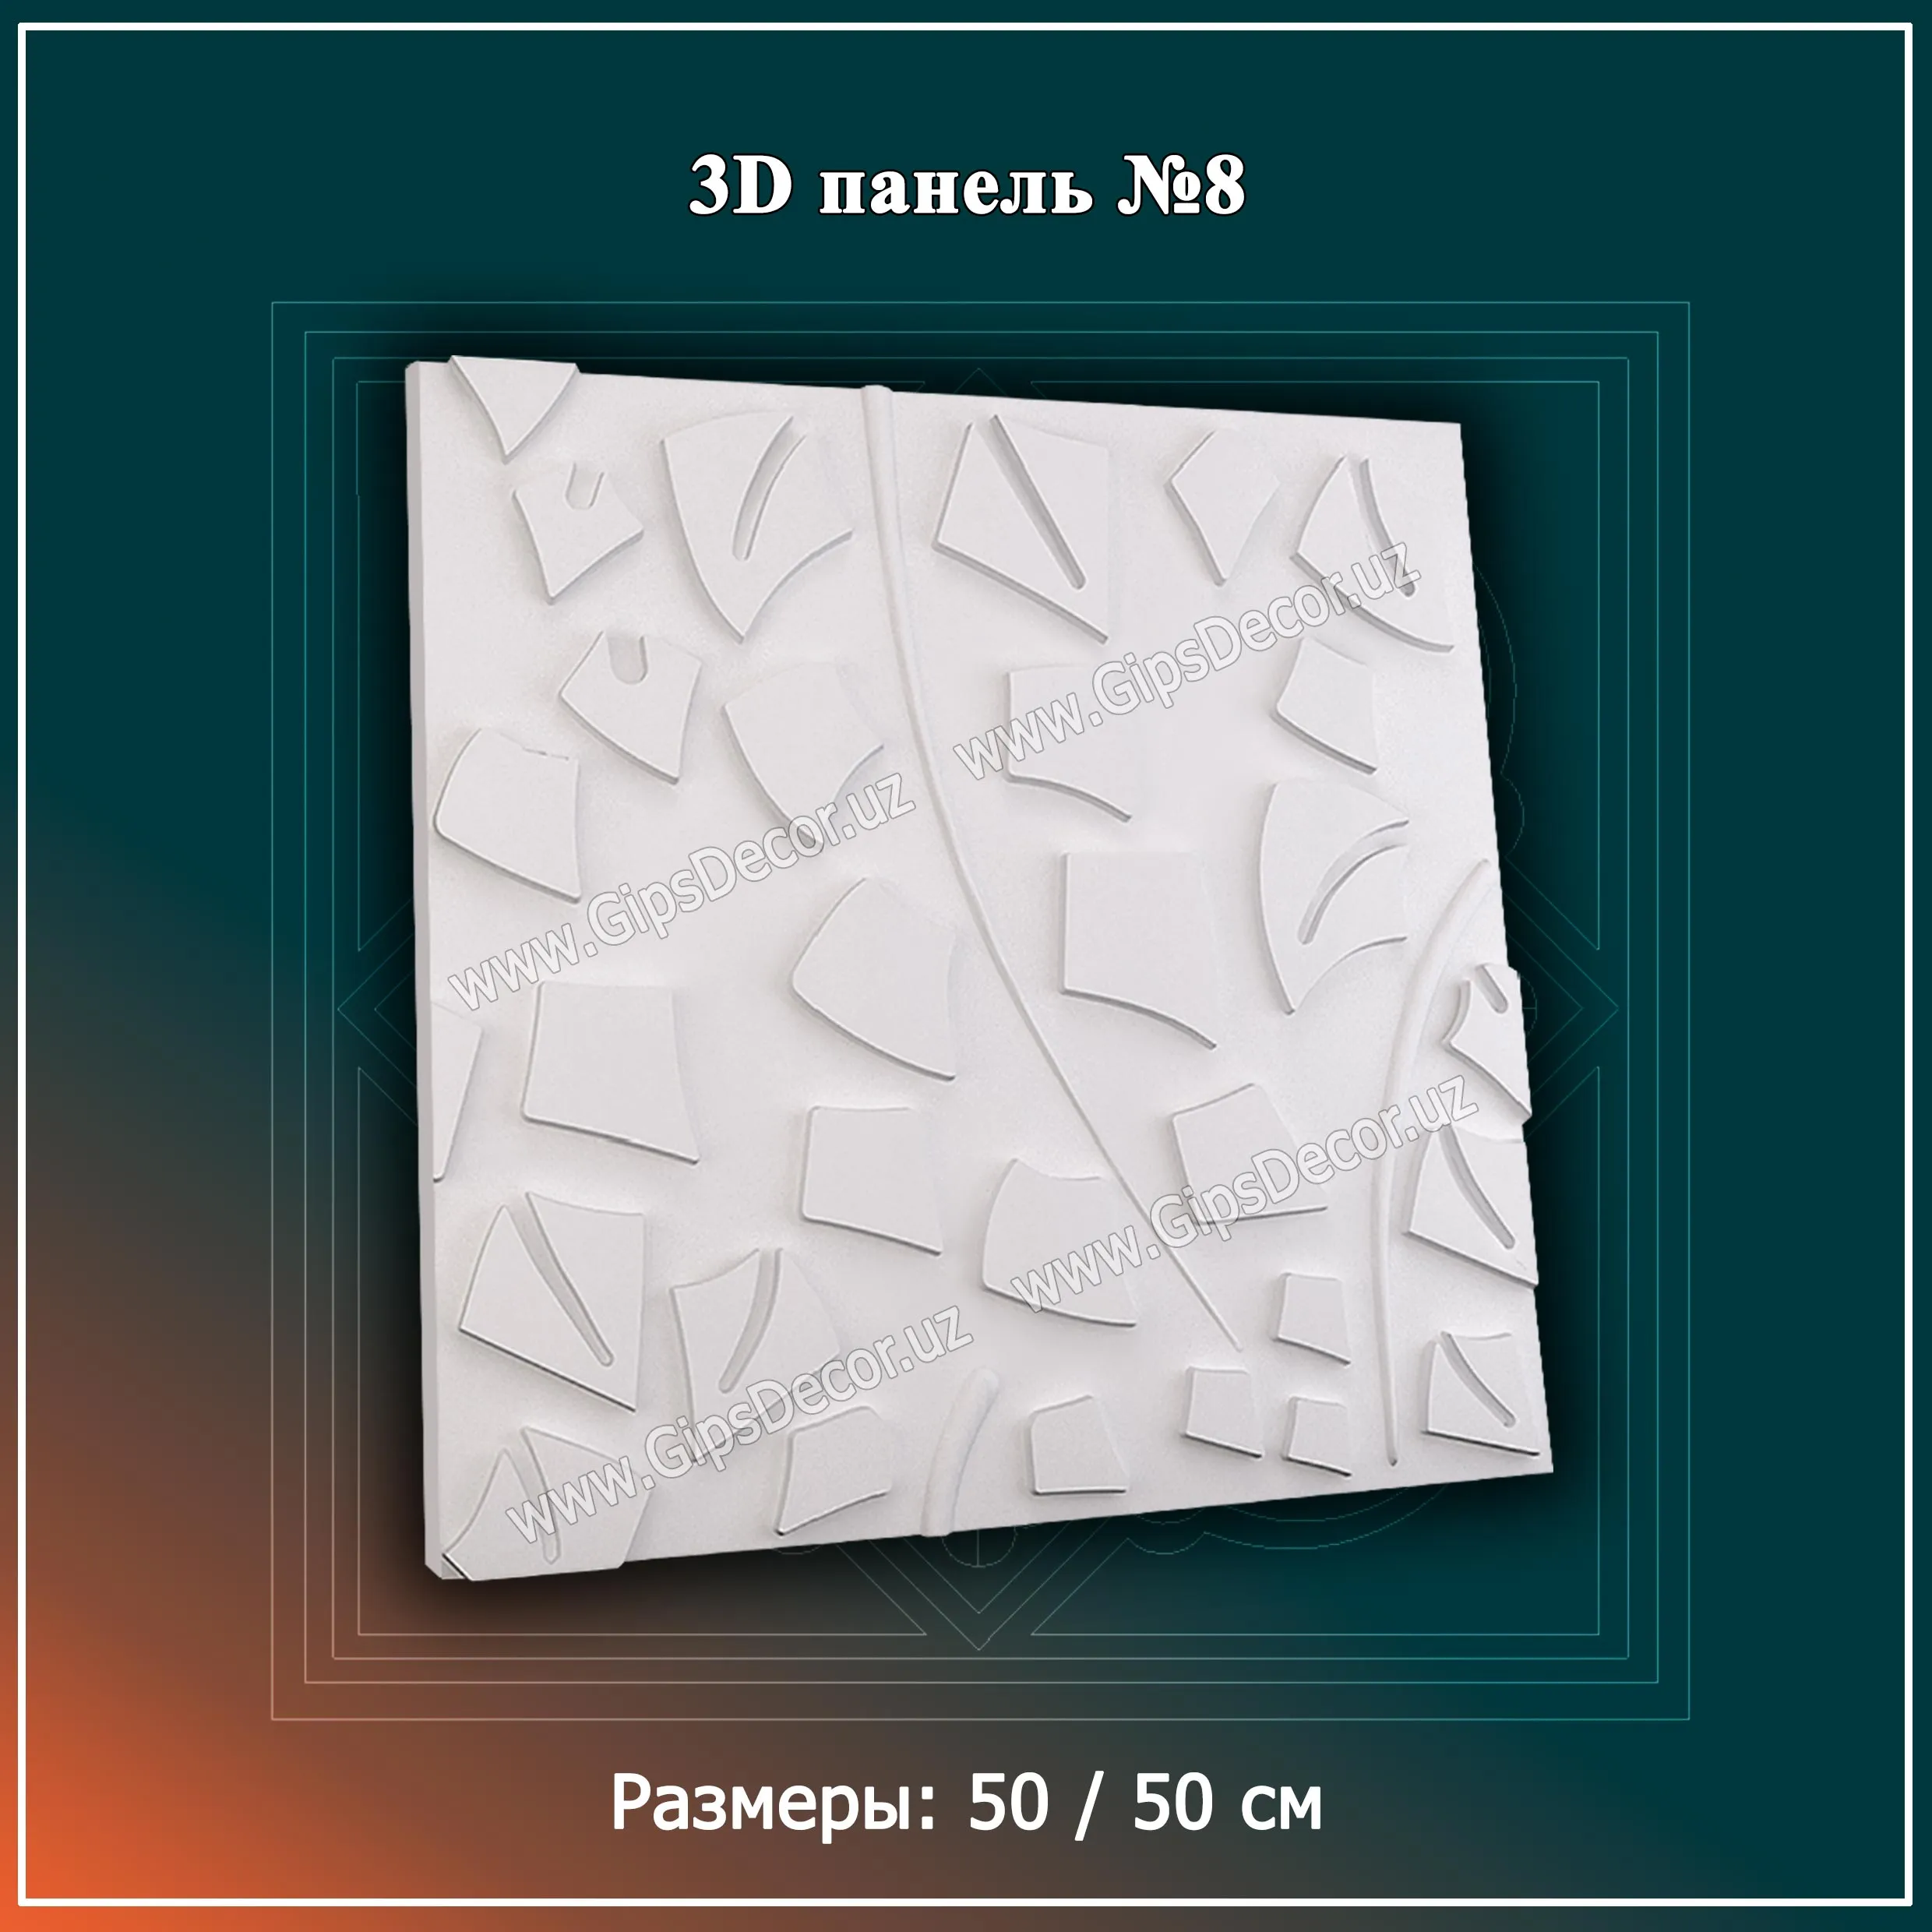 3D Панель №8 Размеры: 50 / 50 см#1